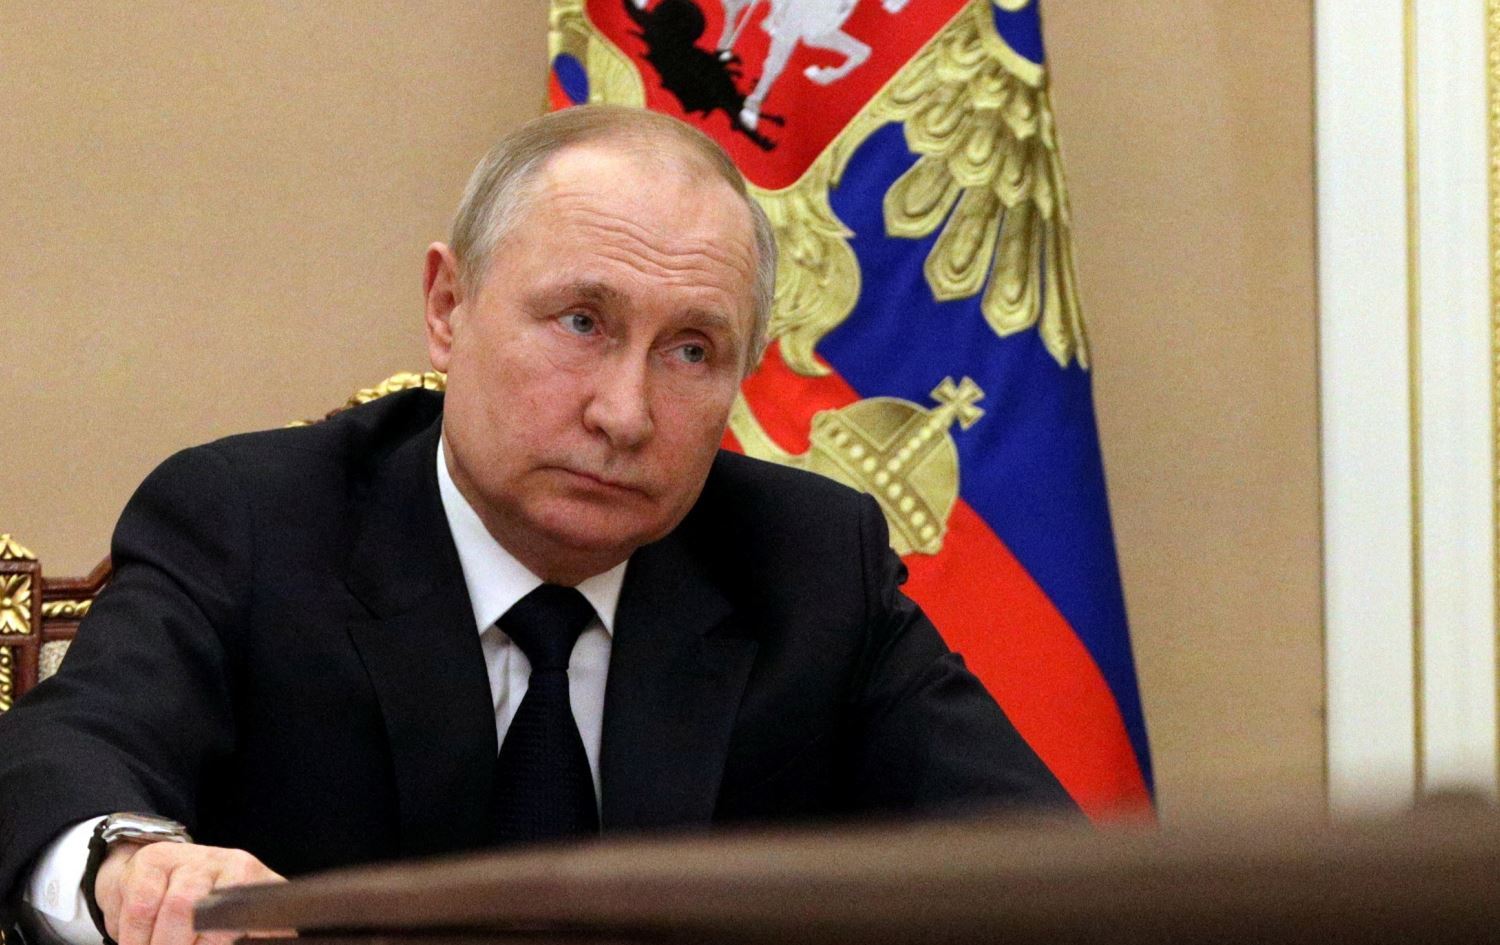 Putin: Dost olmayan ülkeler Rus gazı için ruble ile ödeme yapmalı